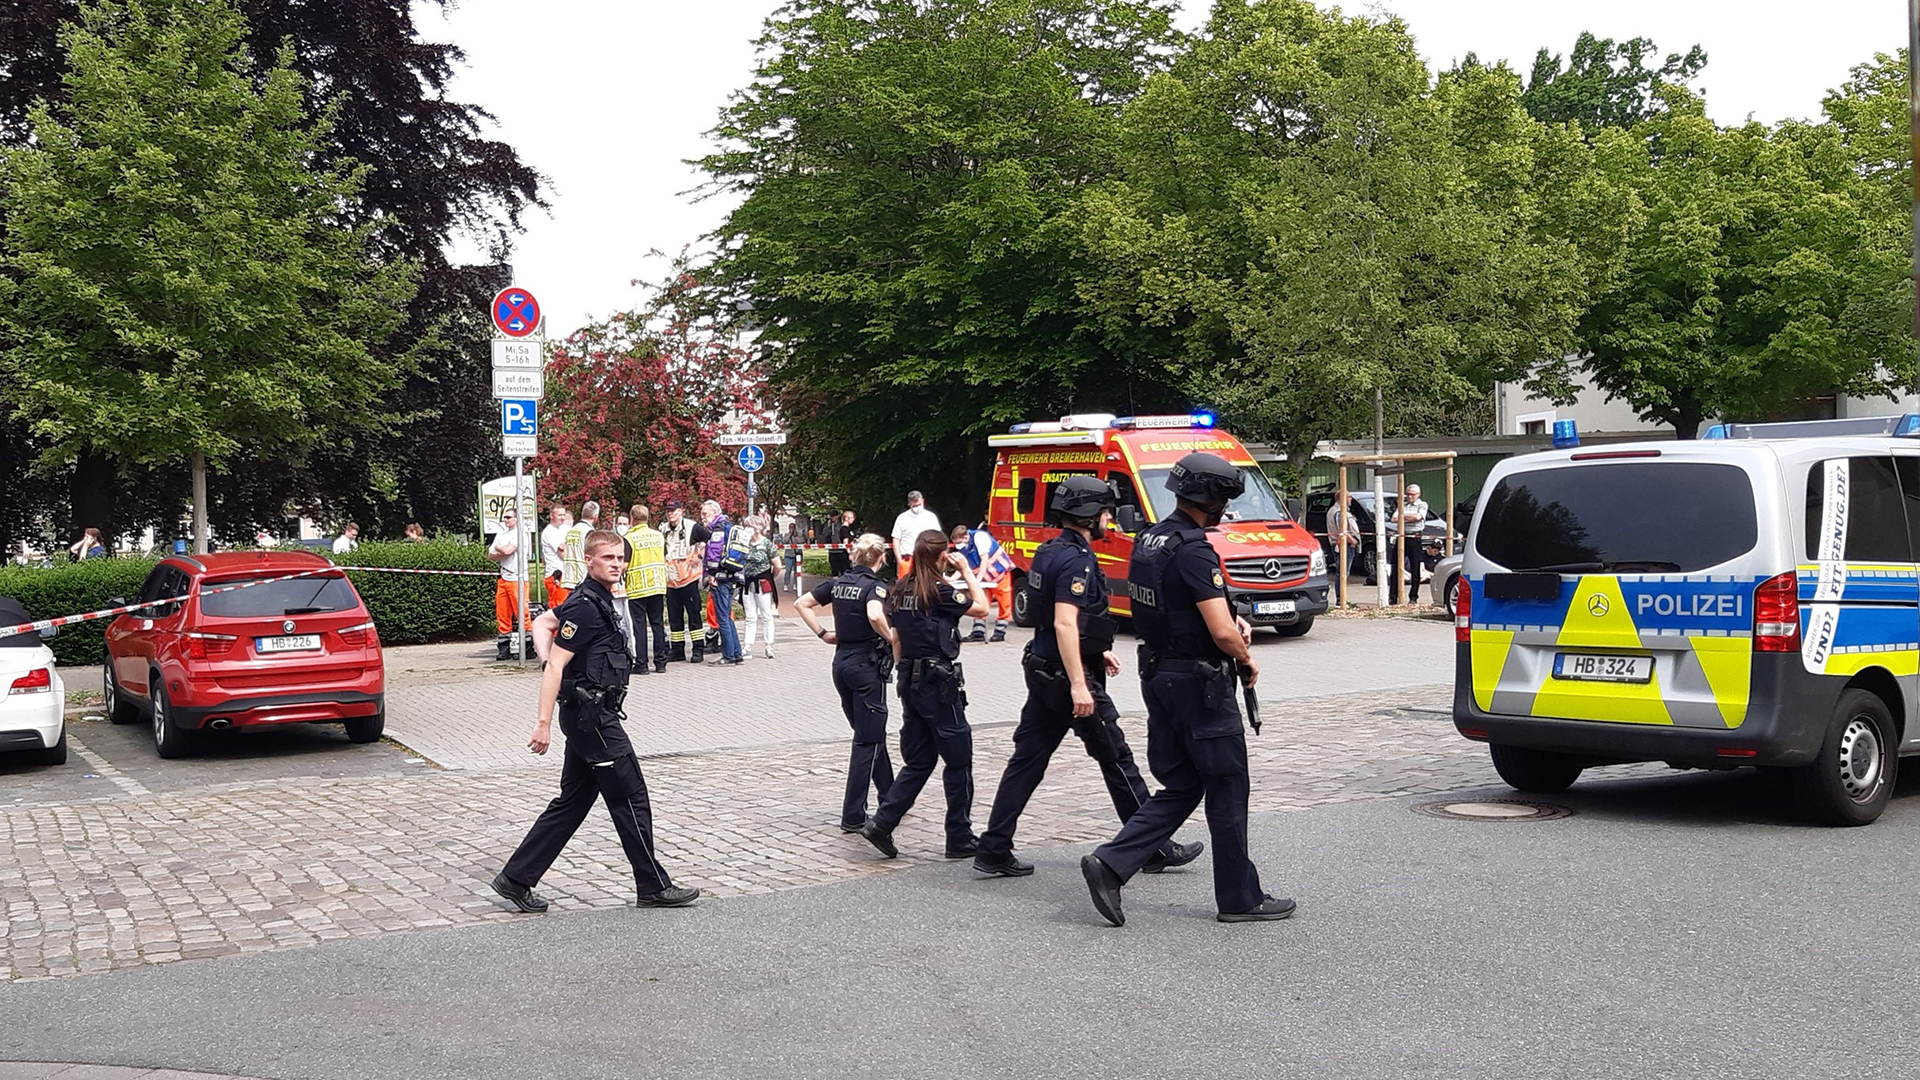 Polizei- und Rettungseinsatz vor einer Schule in Bremerhaven. | Radio Bremen